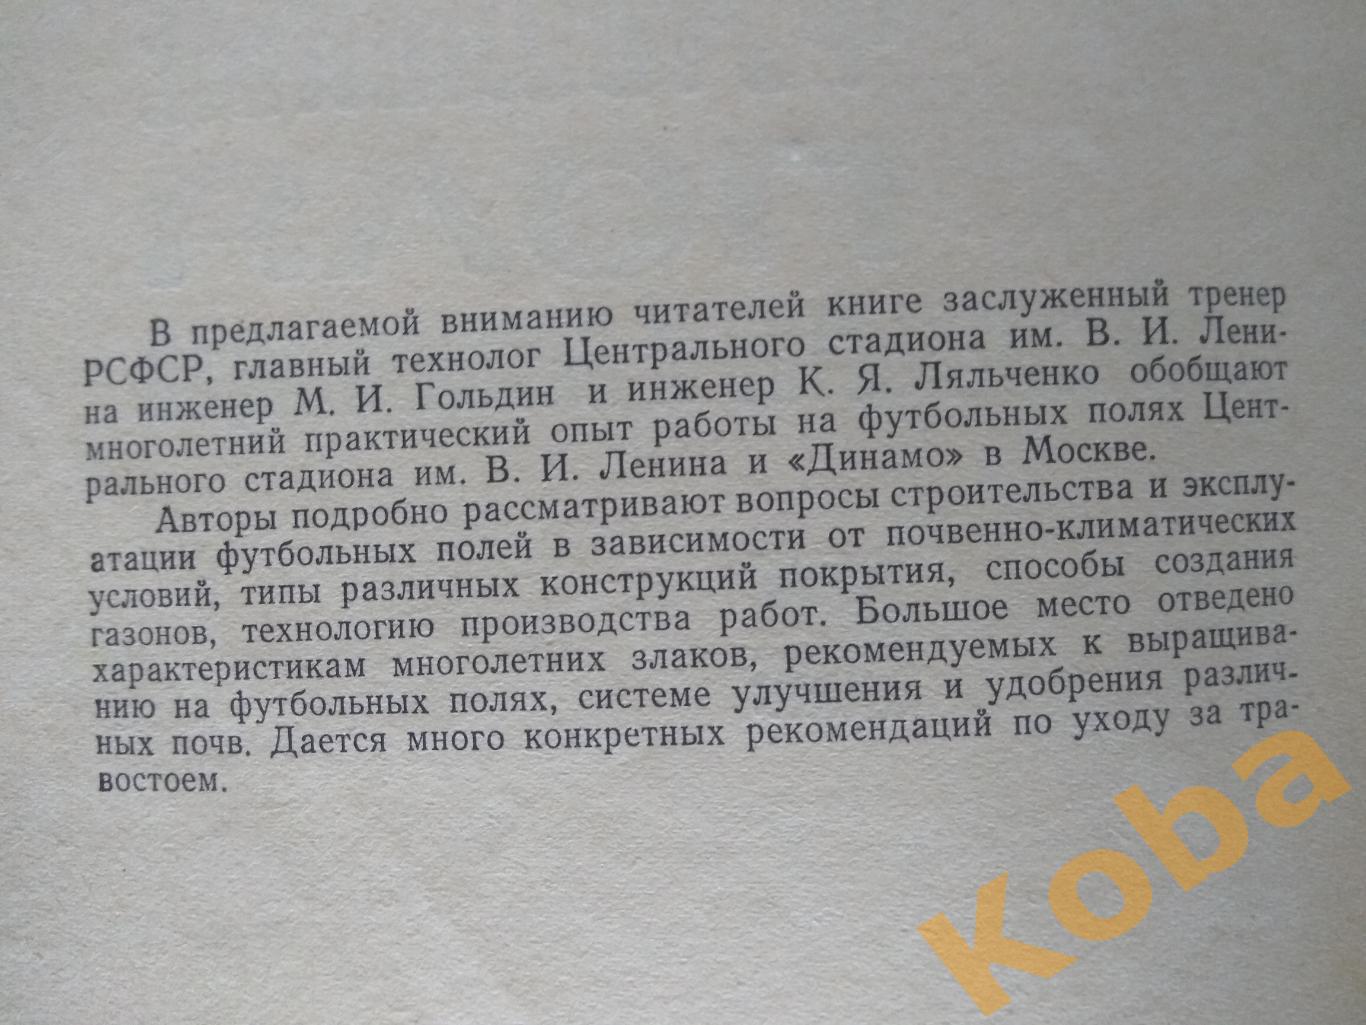 Футбольные поля строительство и эксплуатация 1971 Гольдин Ляльченко 2